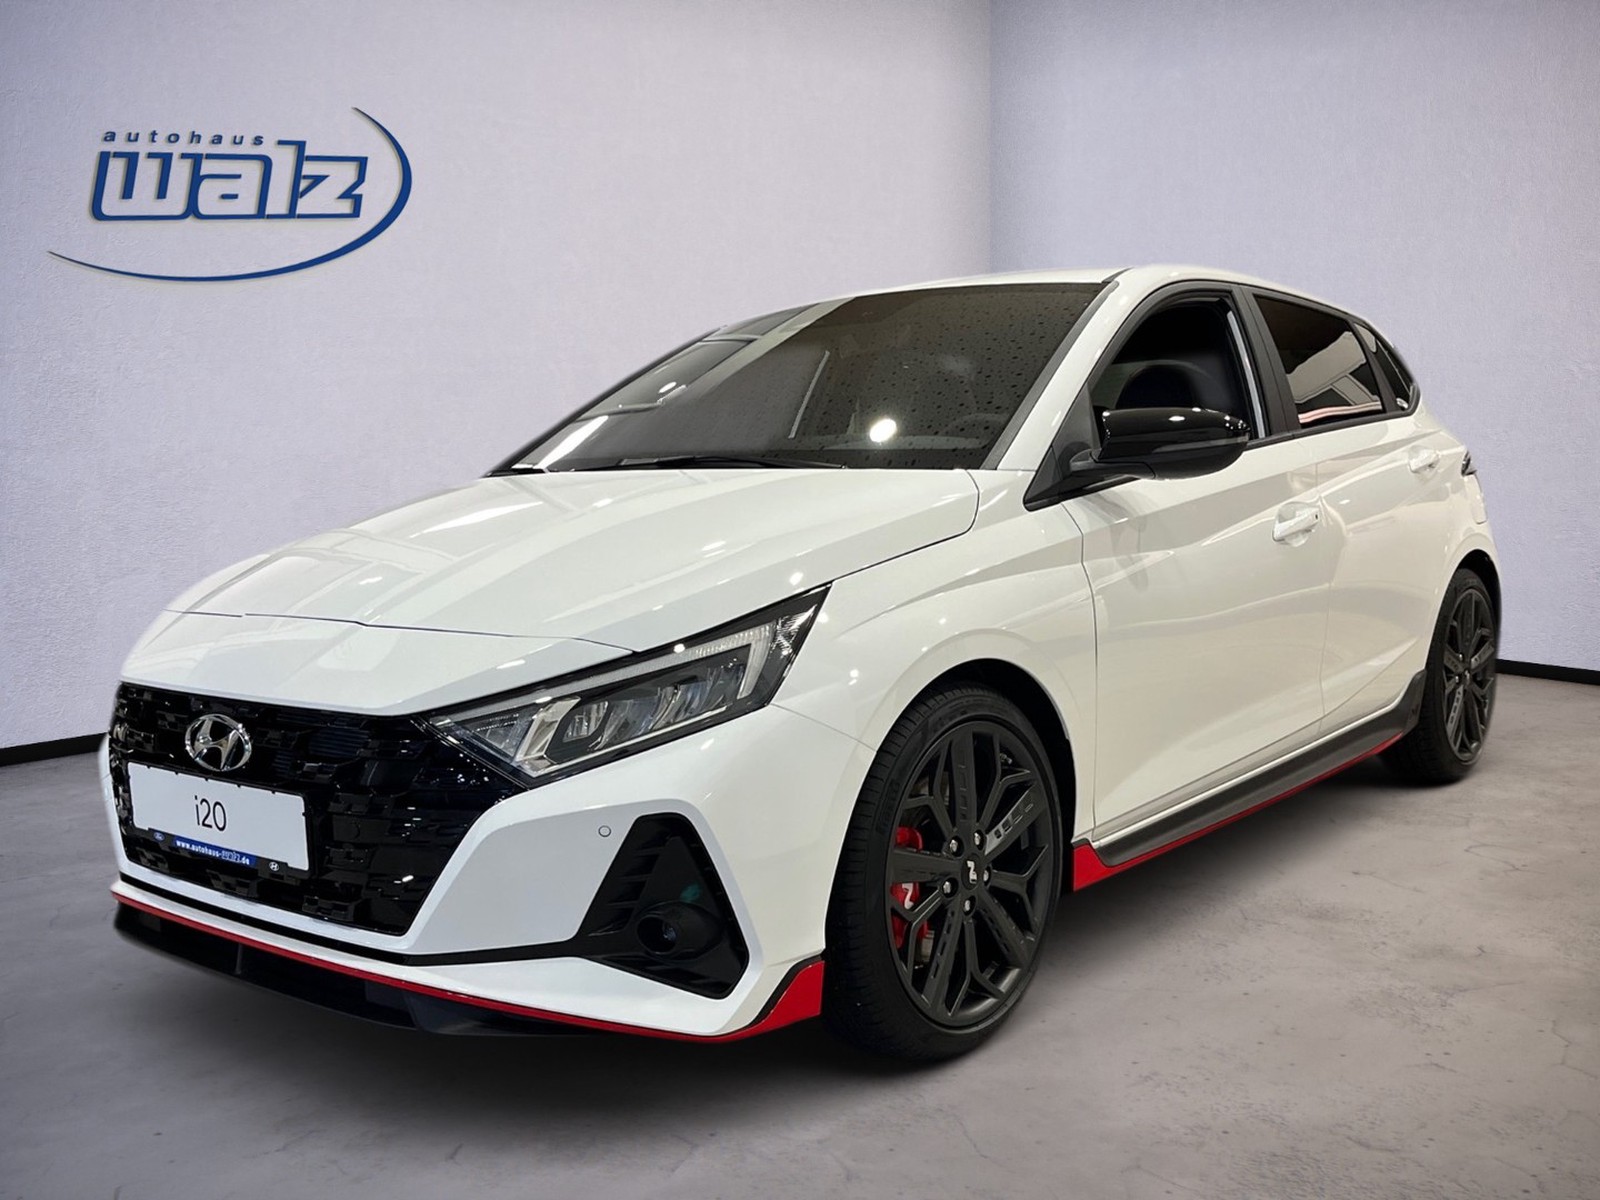 Hyundai i20 N Performance neu kaufen in Calw Preis 29690 eur - Int.Nr.:  13613